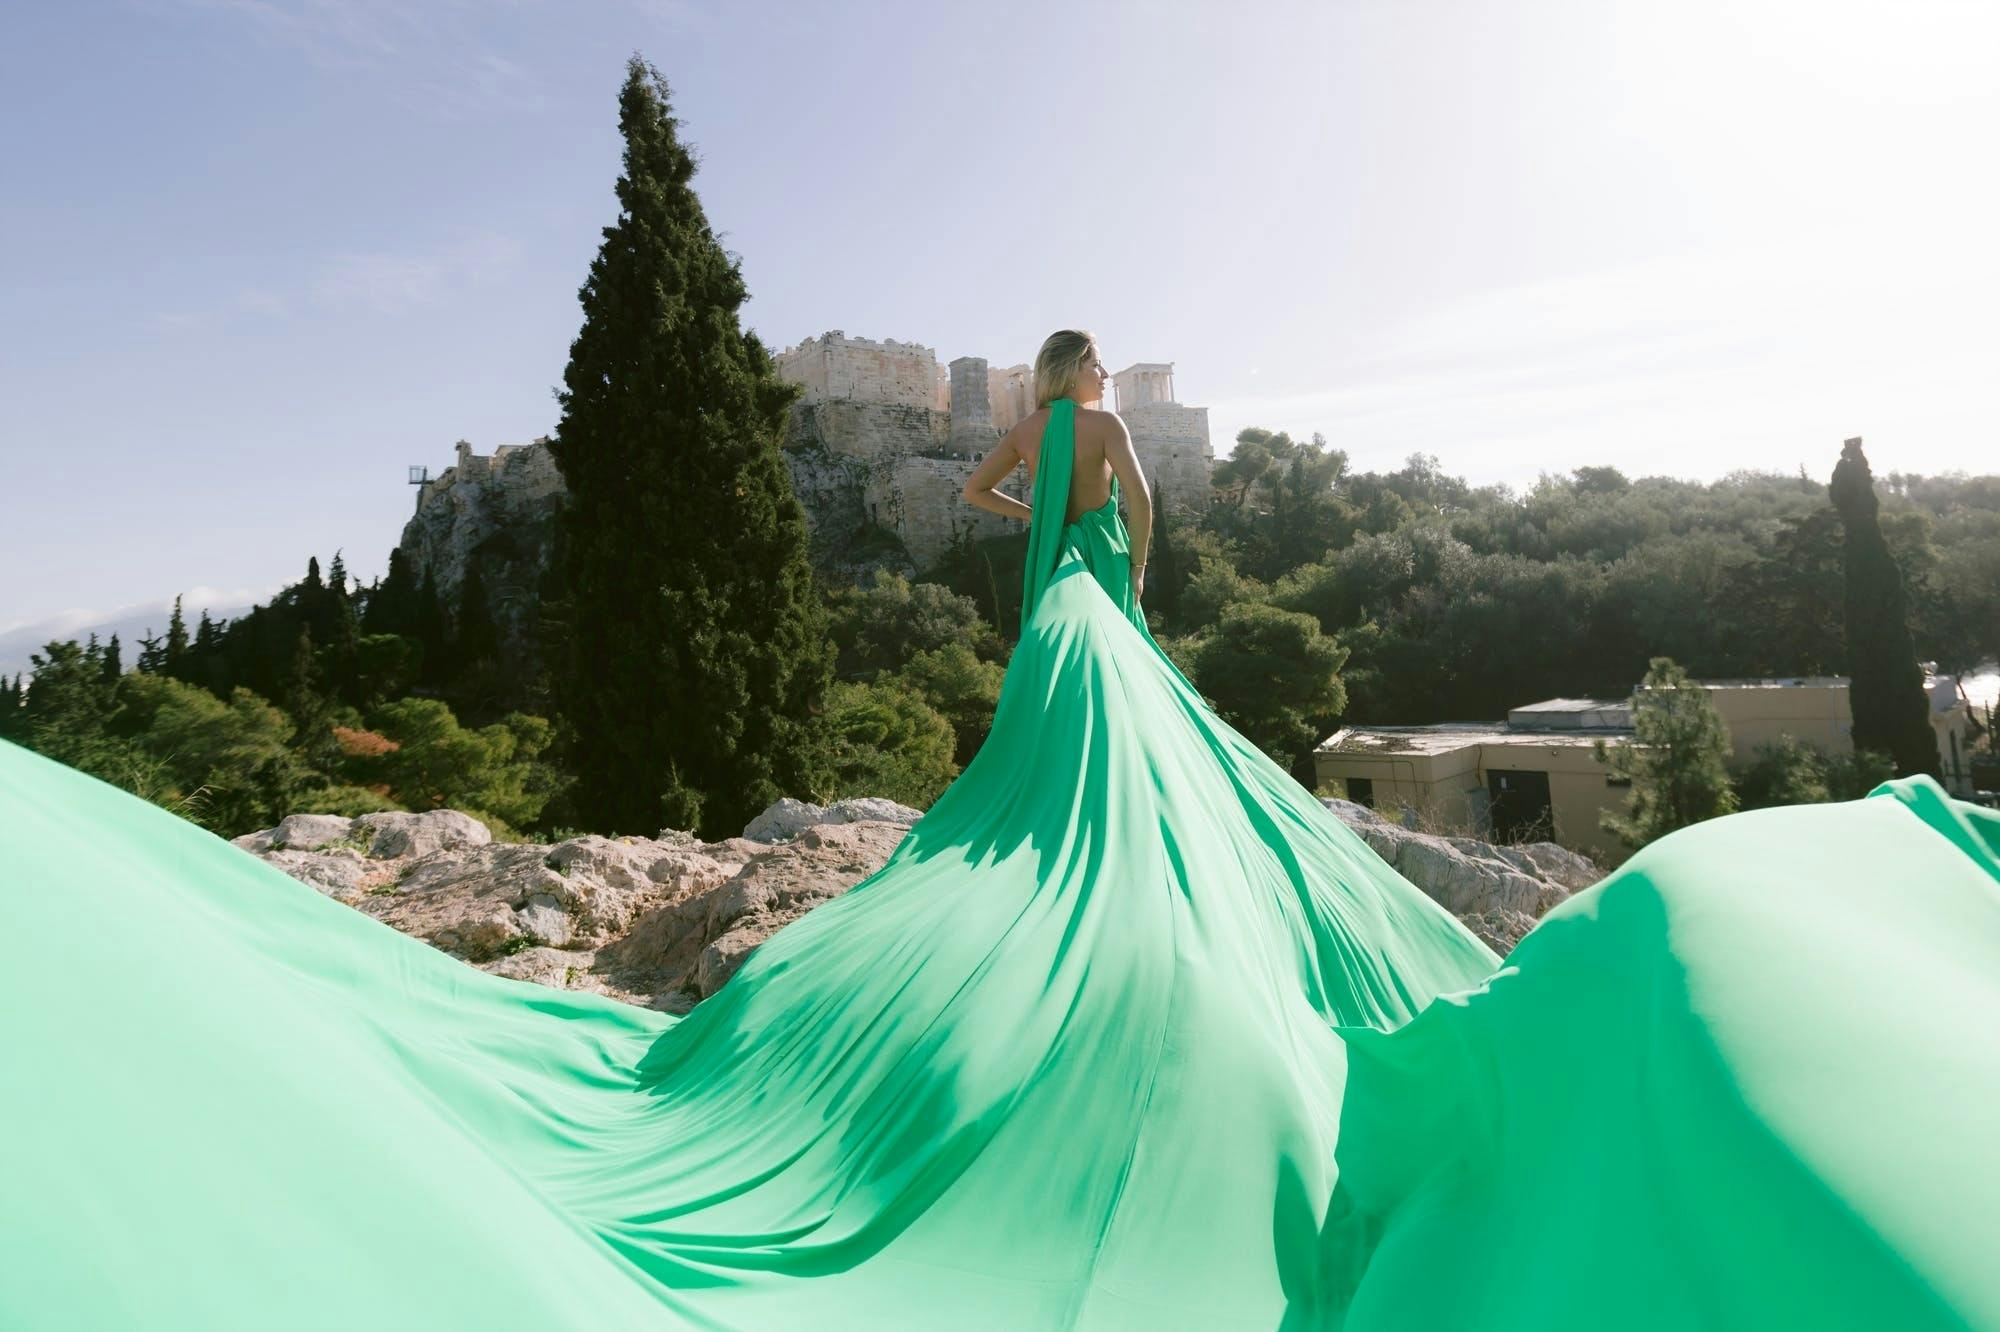 Athens Flying Dress Fotoshooting mit einem professionellen Fotografen